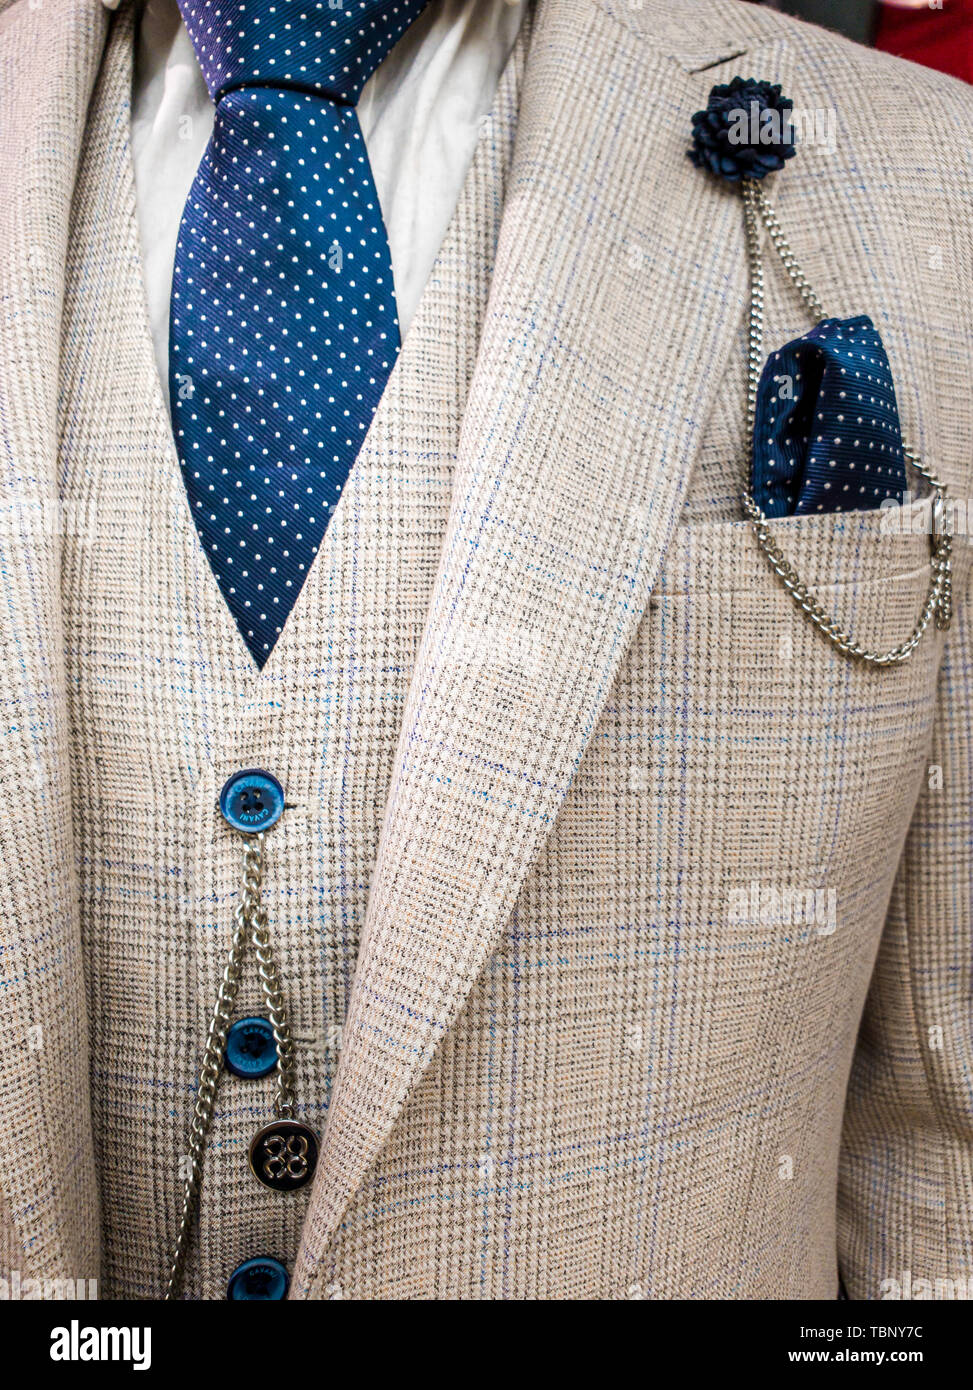 Últimas tendencias en traje, camisa y corbata combinación - traje y corbata  blanca - Navy Tie Fotografía de stock - Alamy